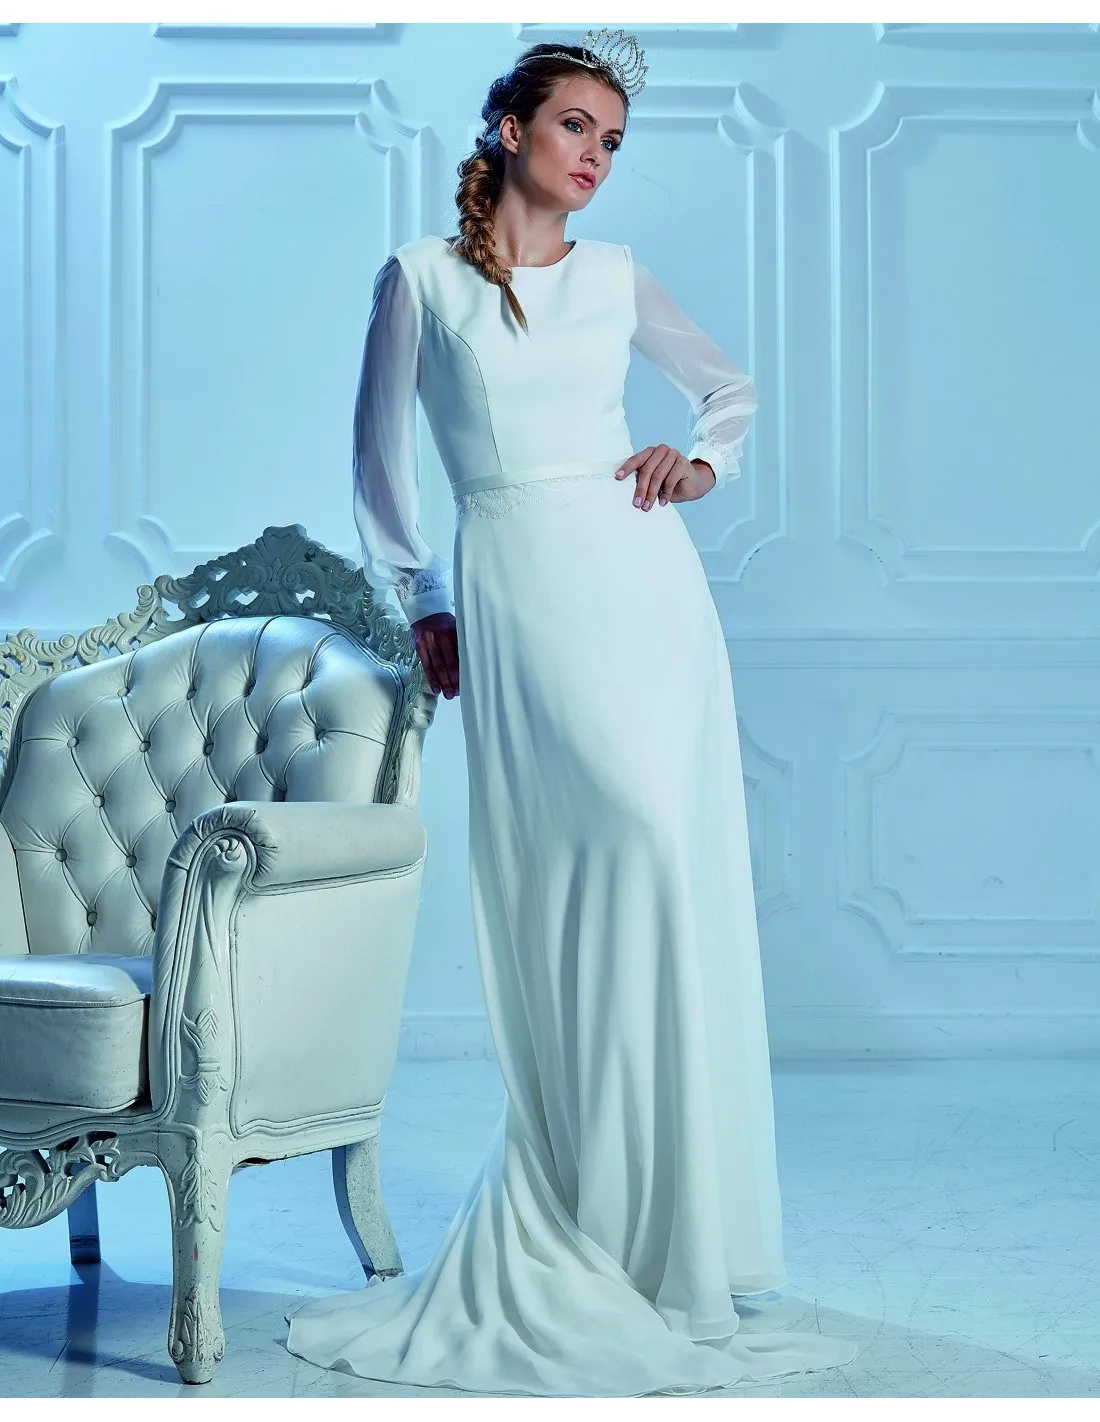 Neue bescheidene Chiffon-Hochzeitskleider mit langen Ärmeln, Juwelenausschnitt, Knöpfen am Rücken, schlichtes LDS-Hochzeitskleid. Neu eingetroffen